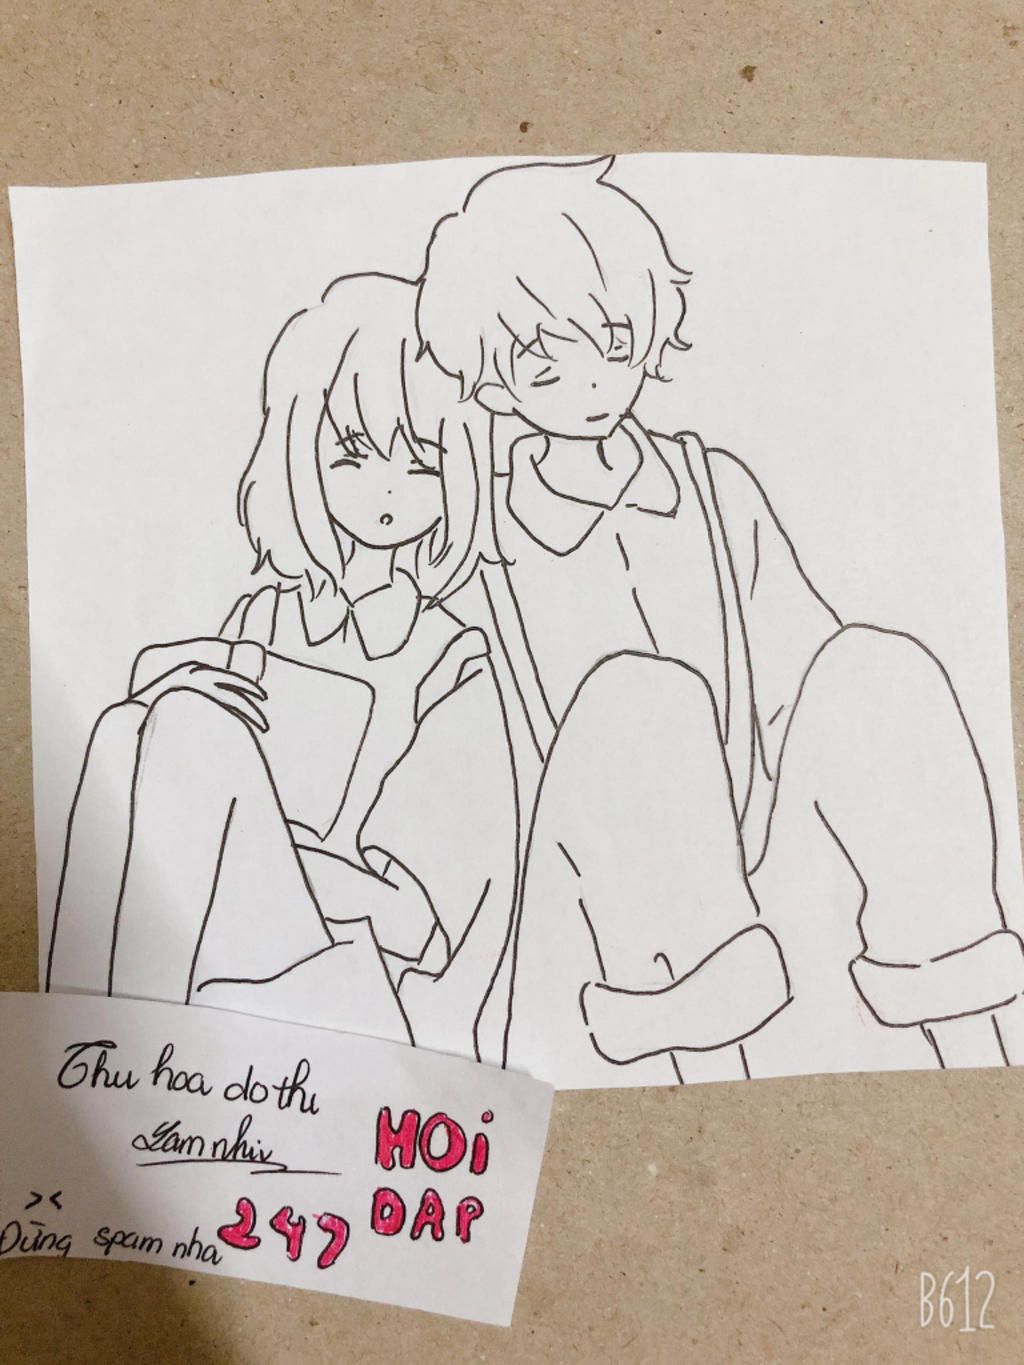 AnimeHay - Các cặp đôi được yêu thích nhất trong anime💓 | Facebook